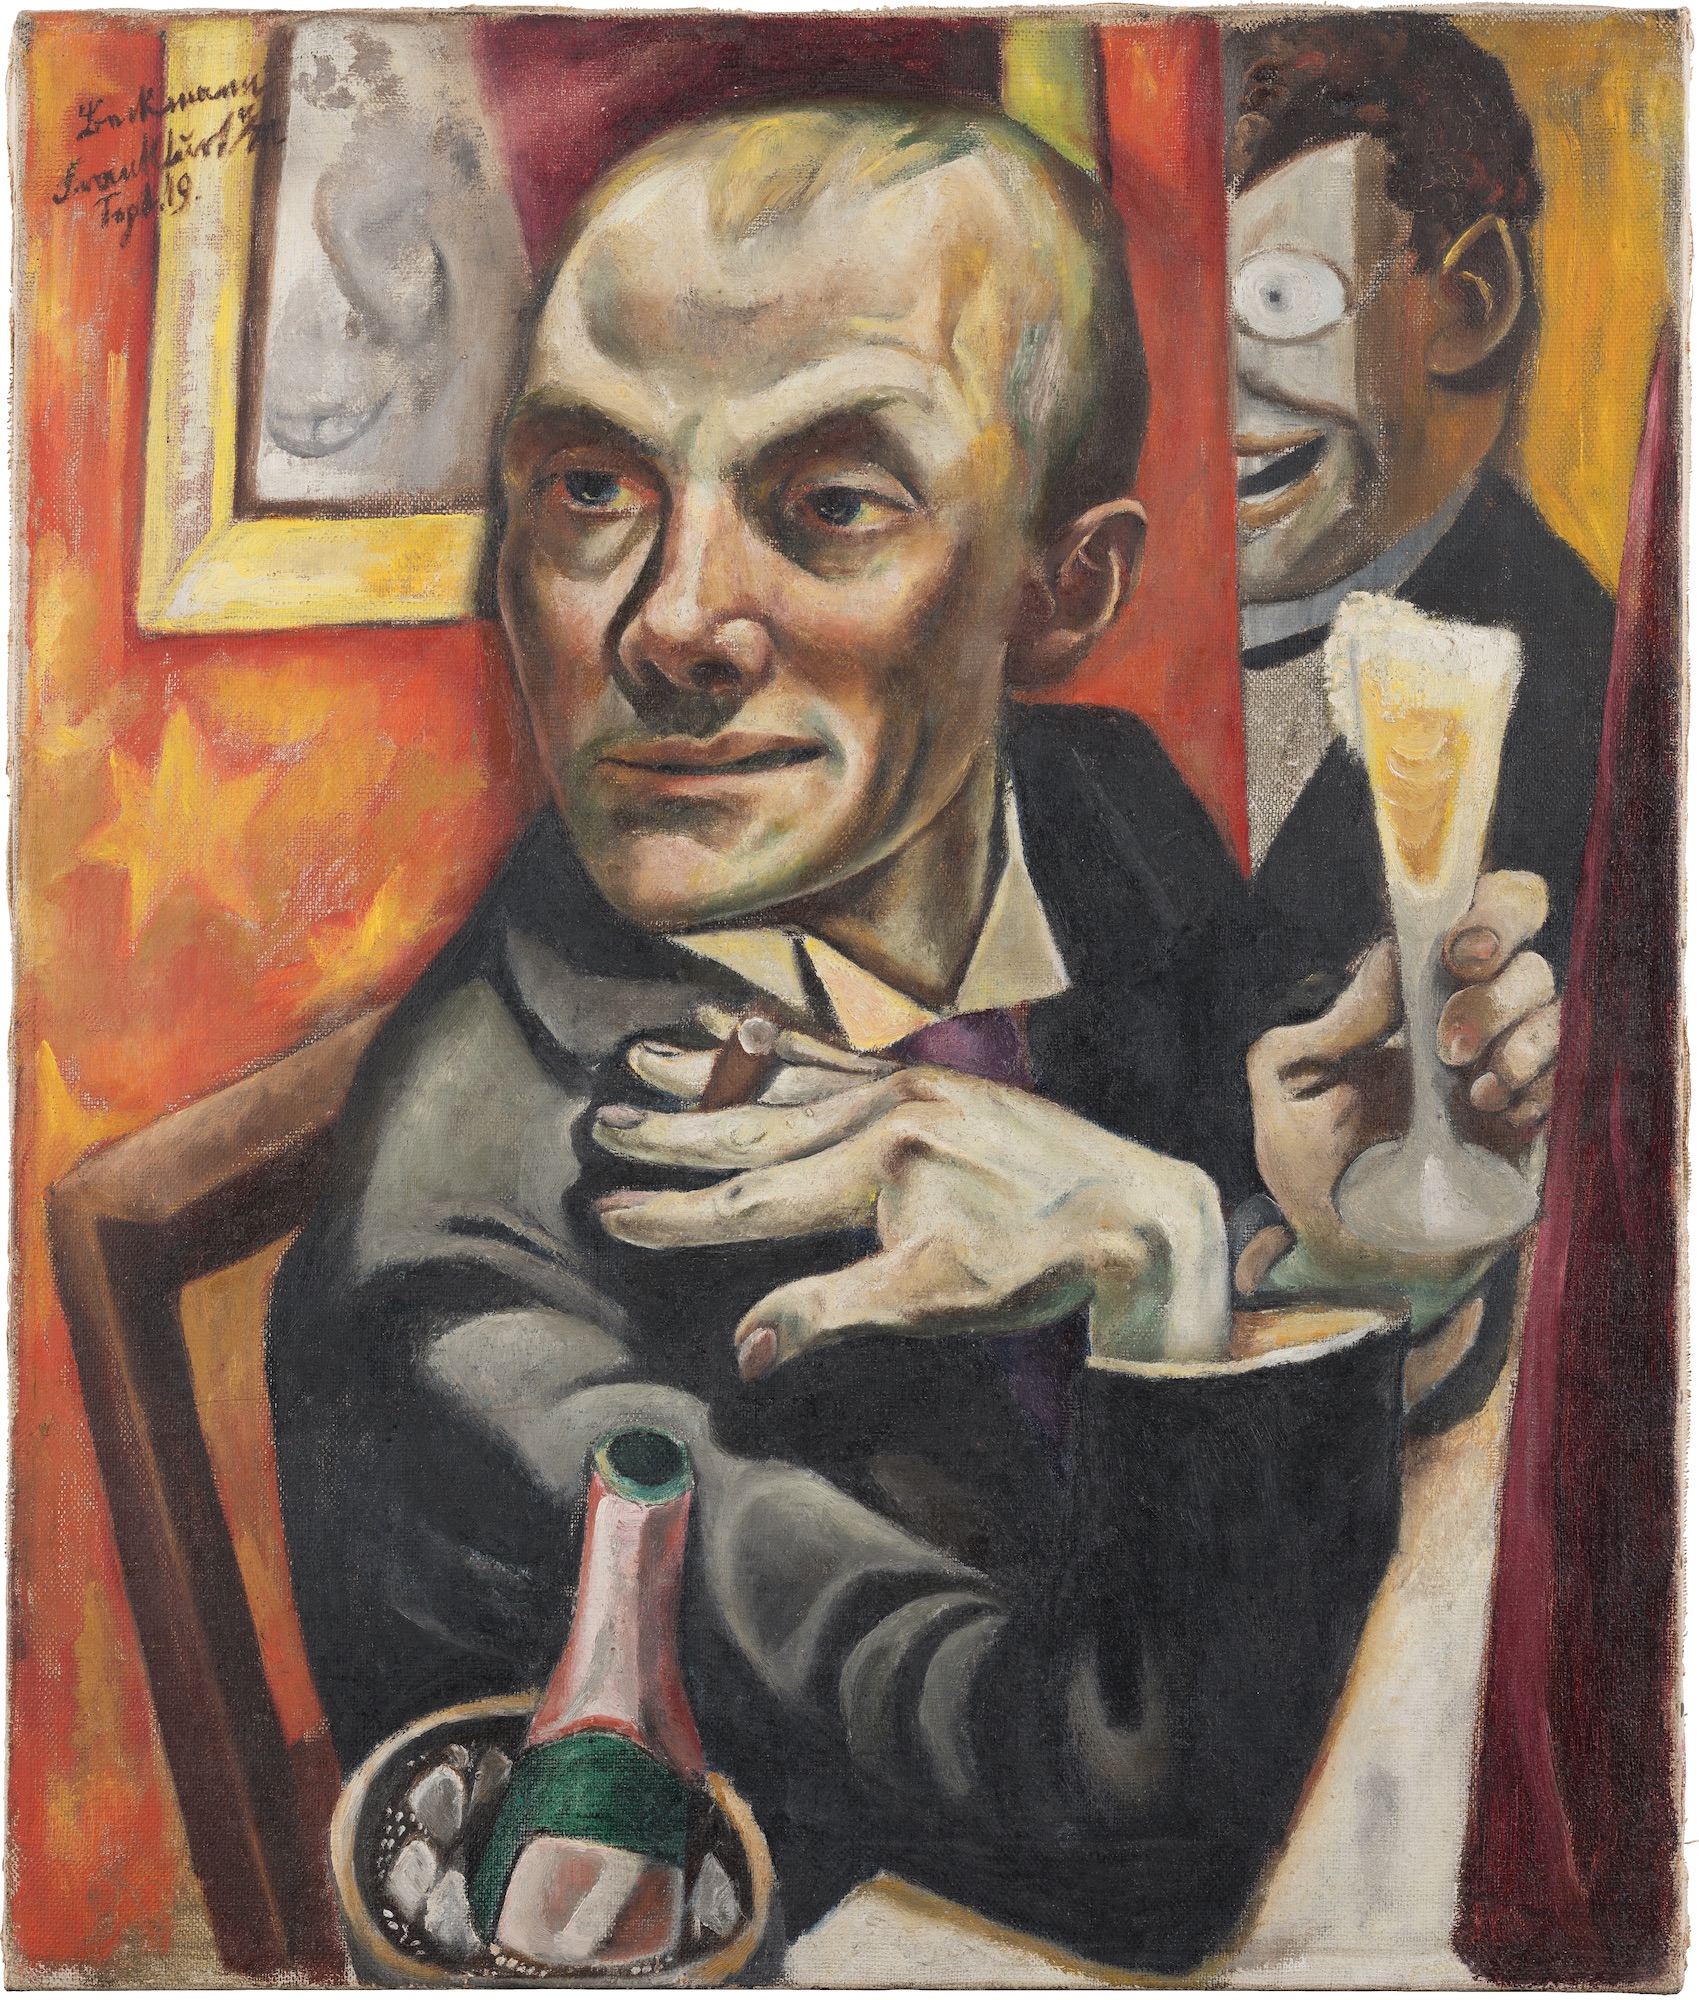 シャンパン・グラスを持った自画像 by Max Beckmann - 1919年 - 65.0 x 55.5 cm 